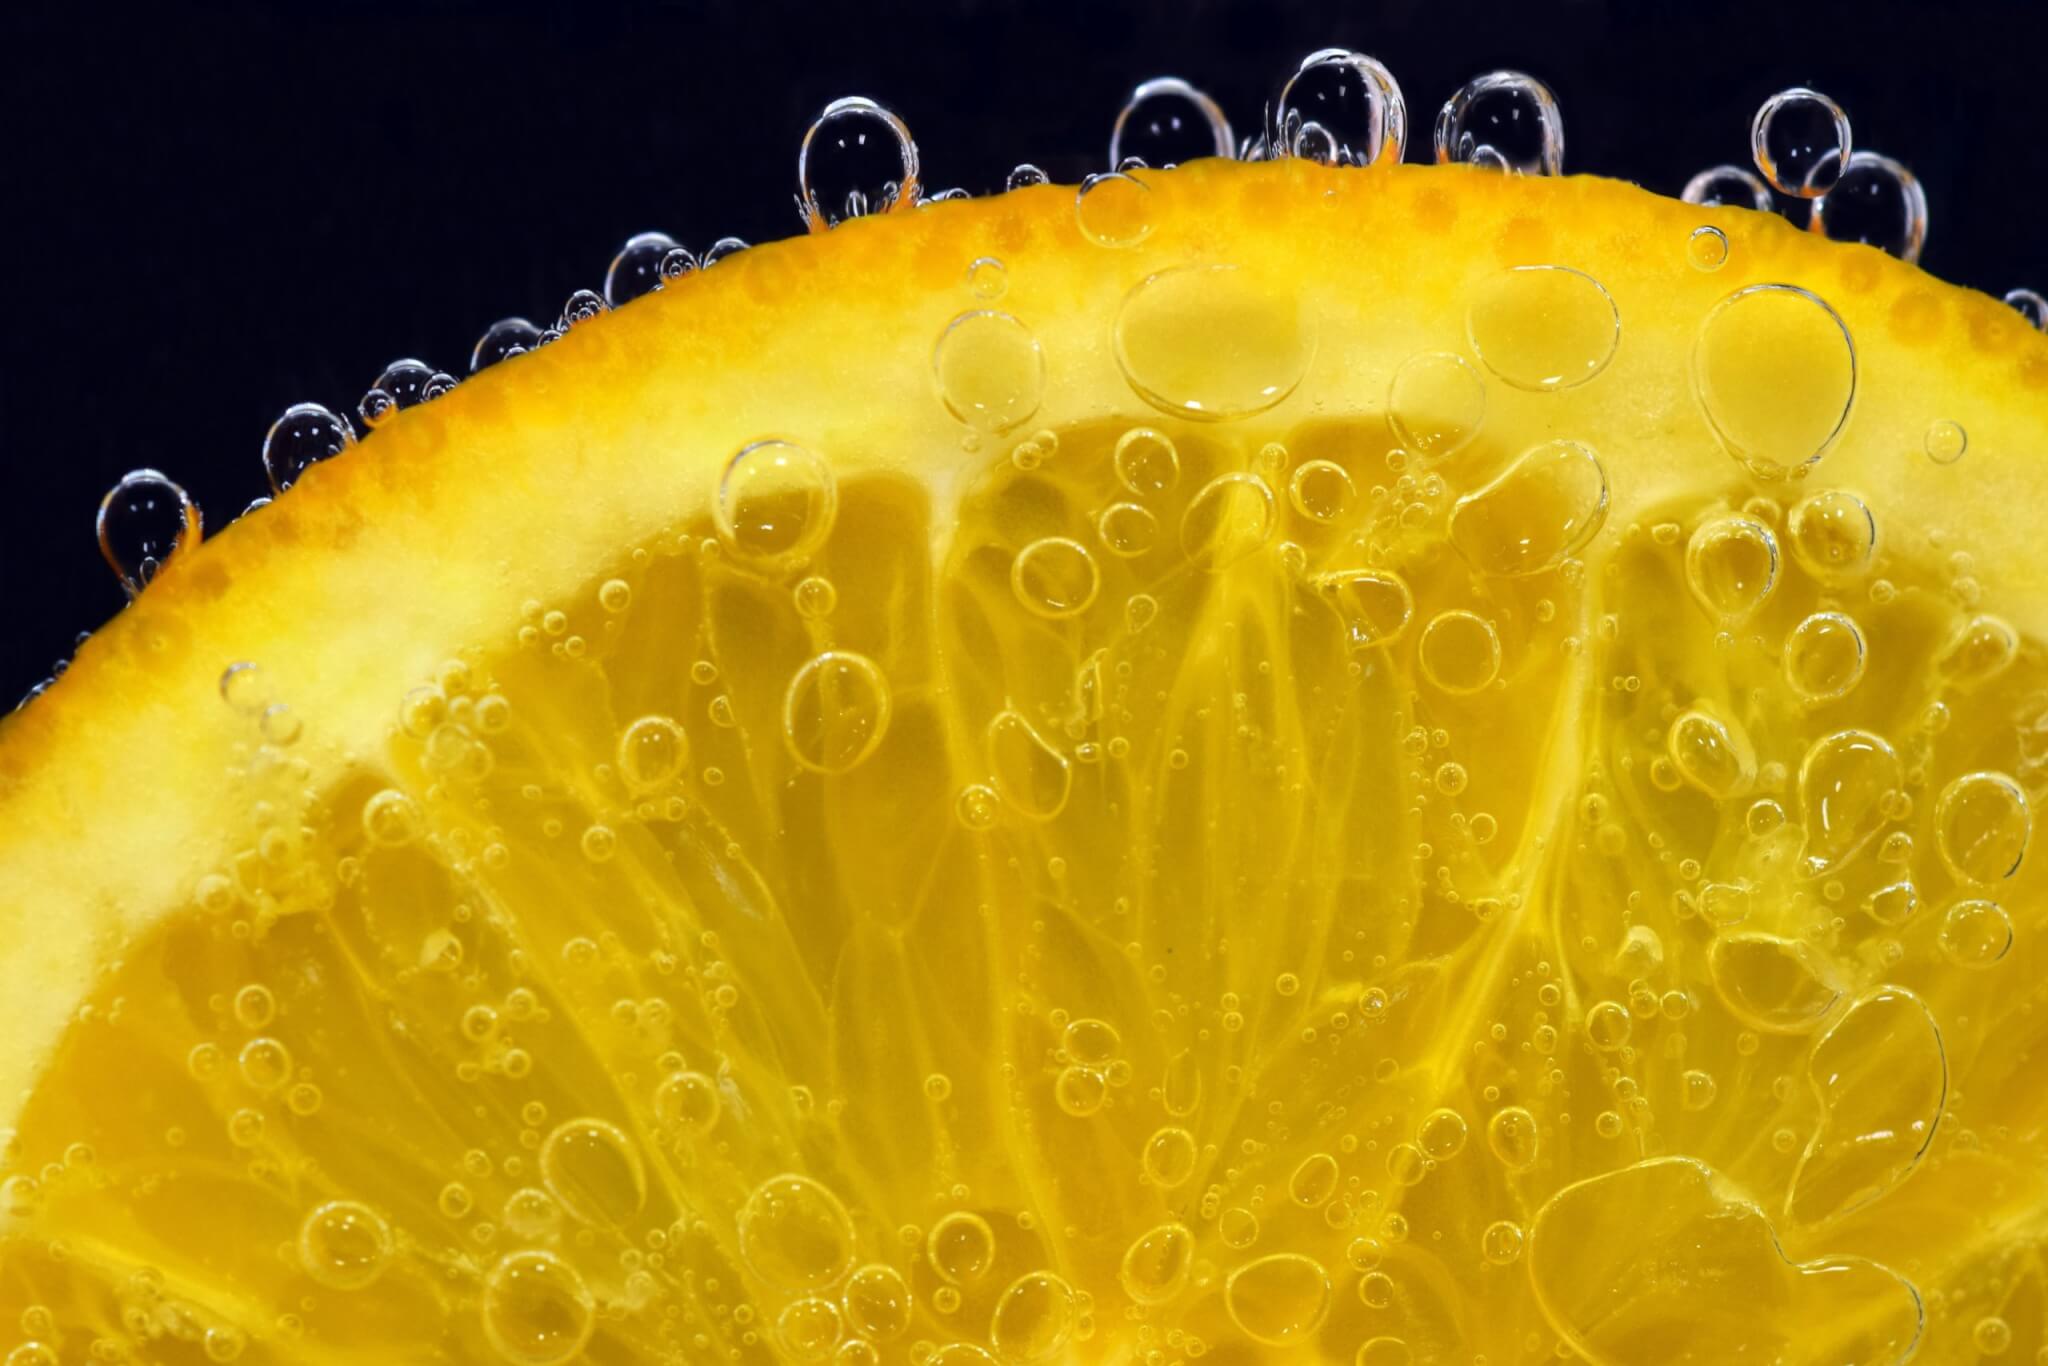 Orange slice in water - Vitamin C